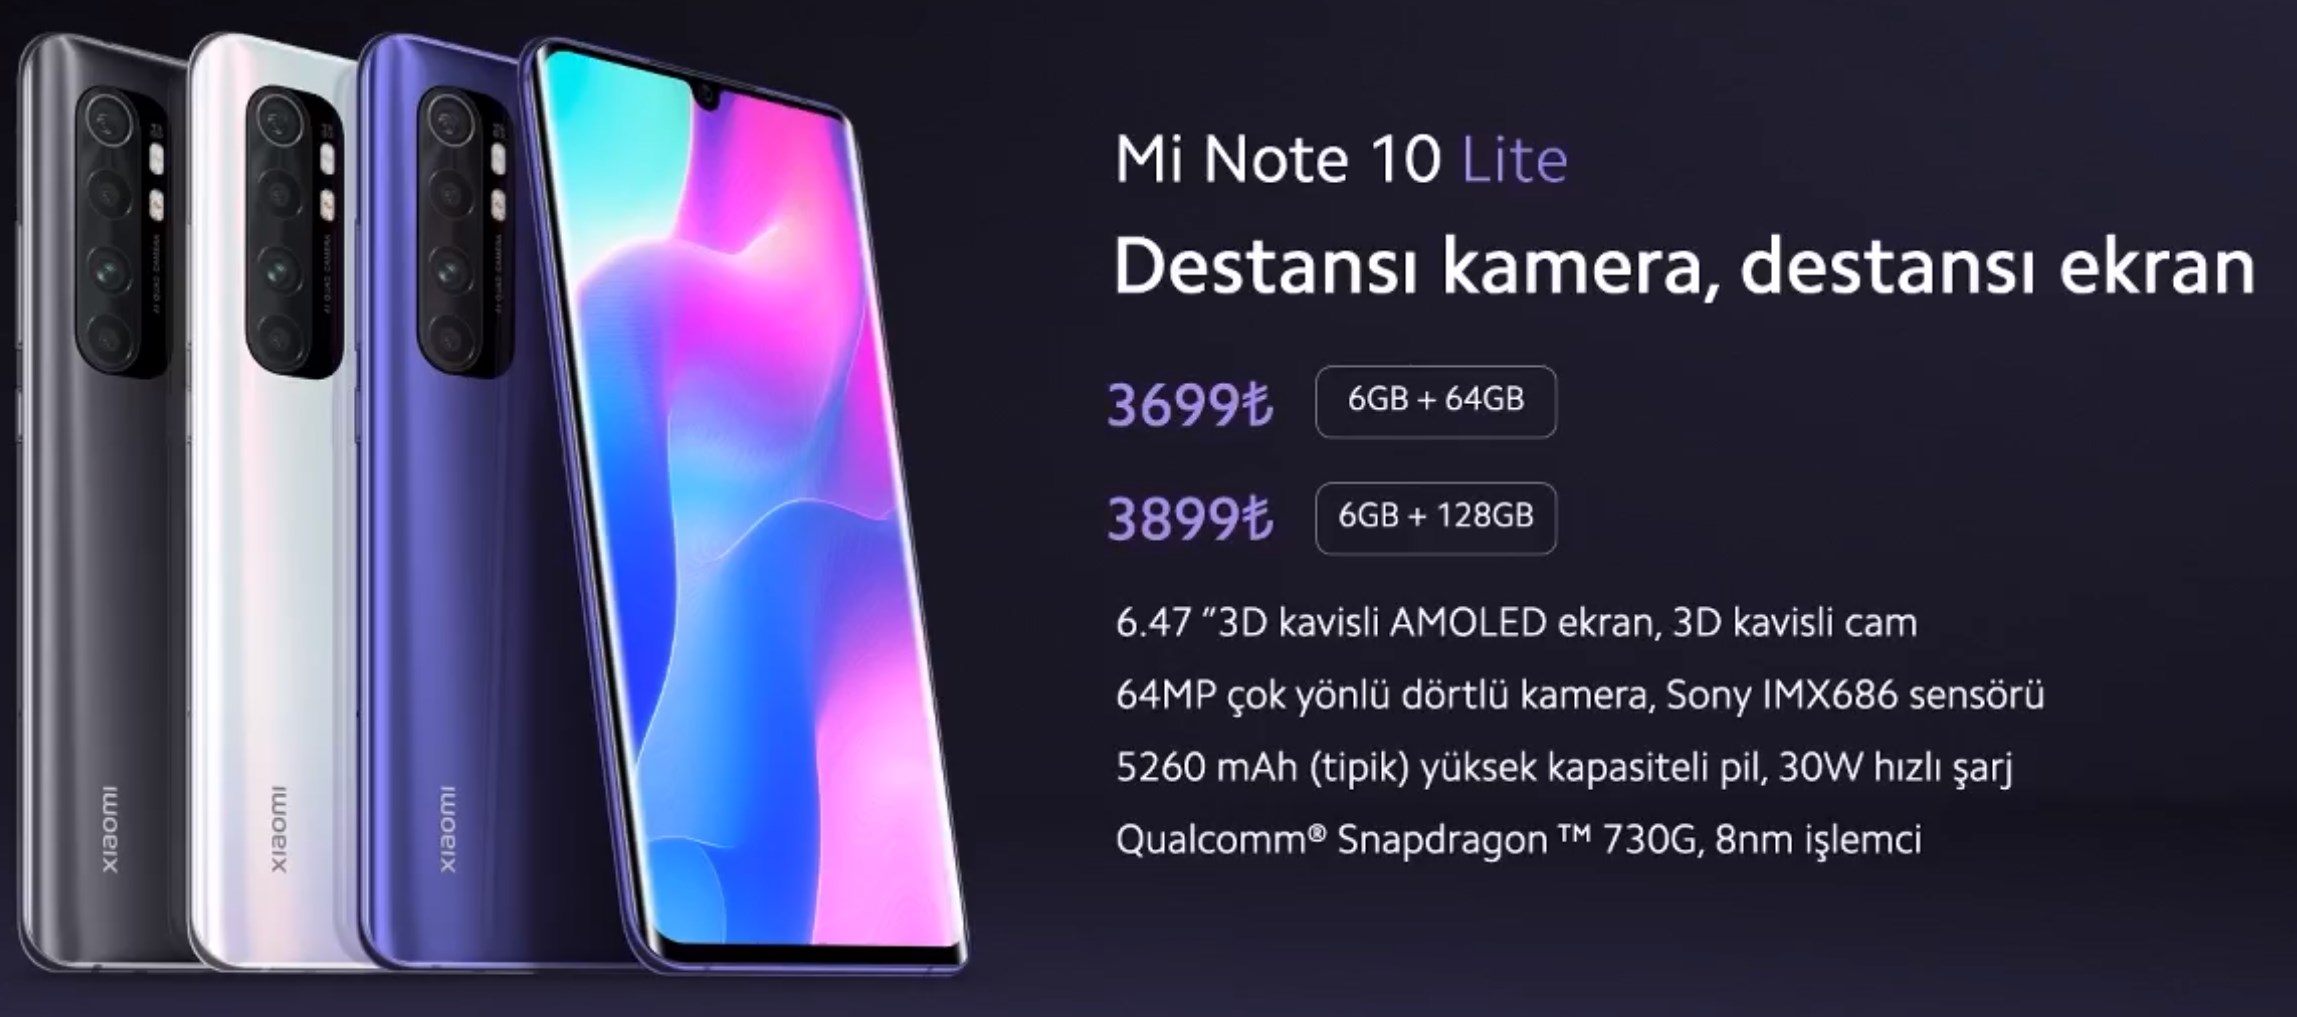 Redmi Note 9 Pro ve Mi Note 10 Lite'ın Türkiye fiyatı açıklandı